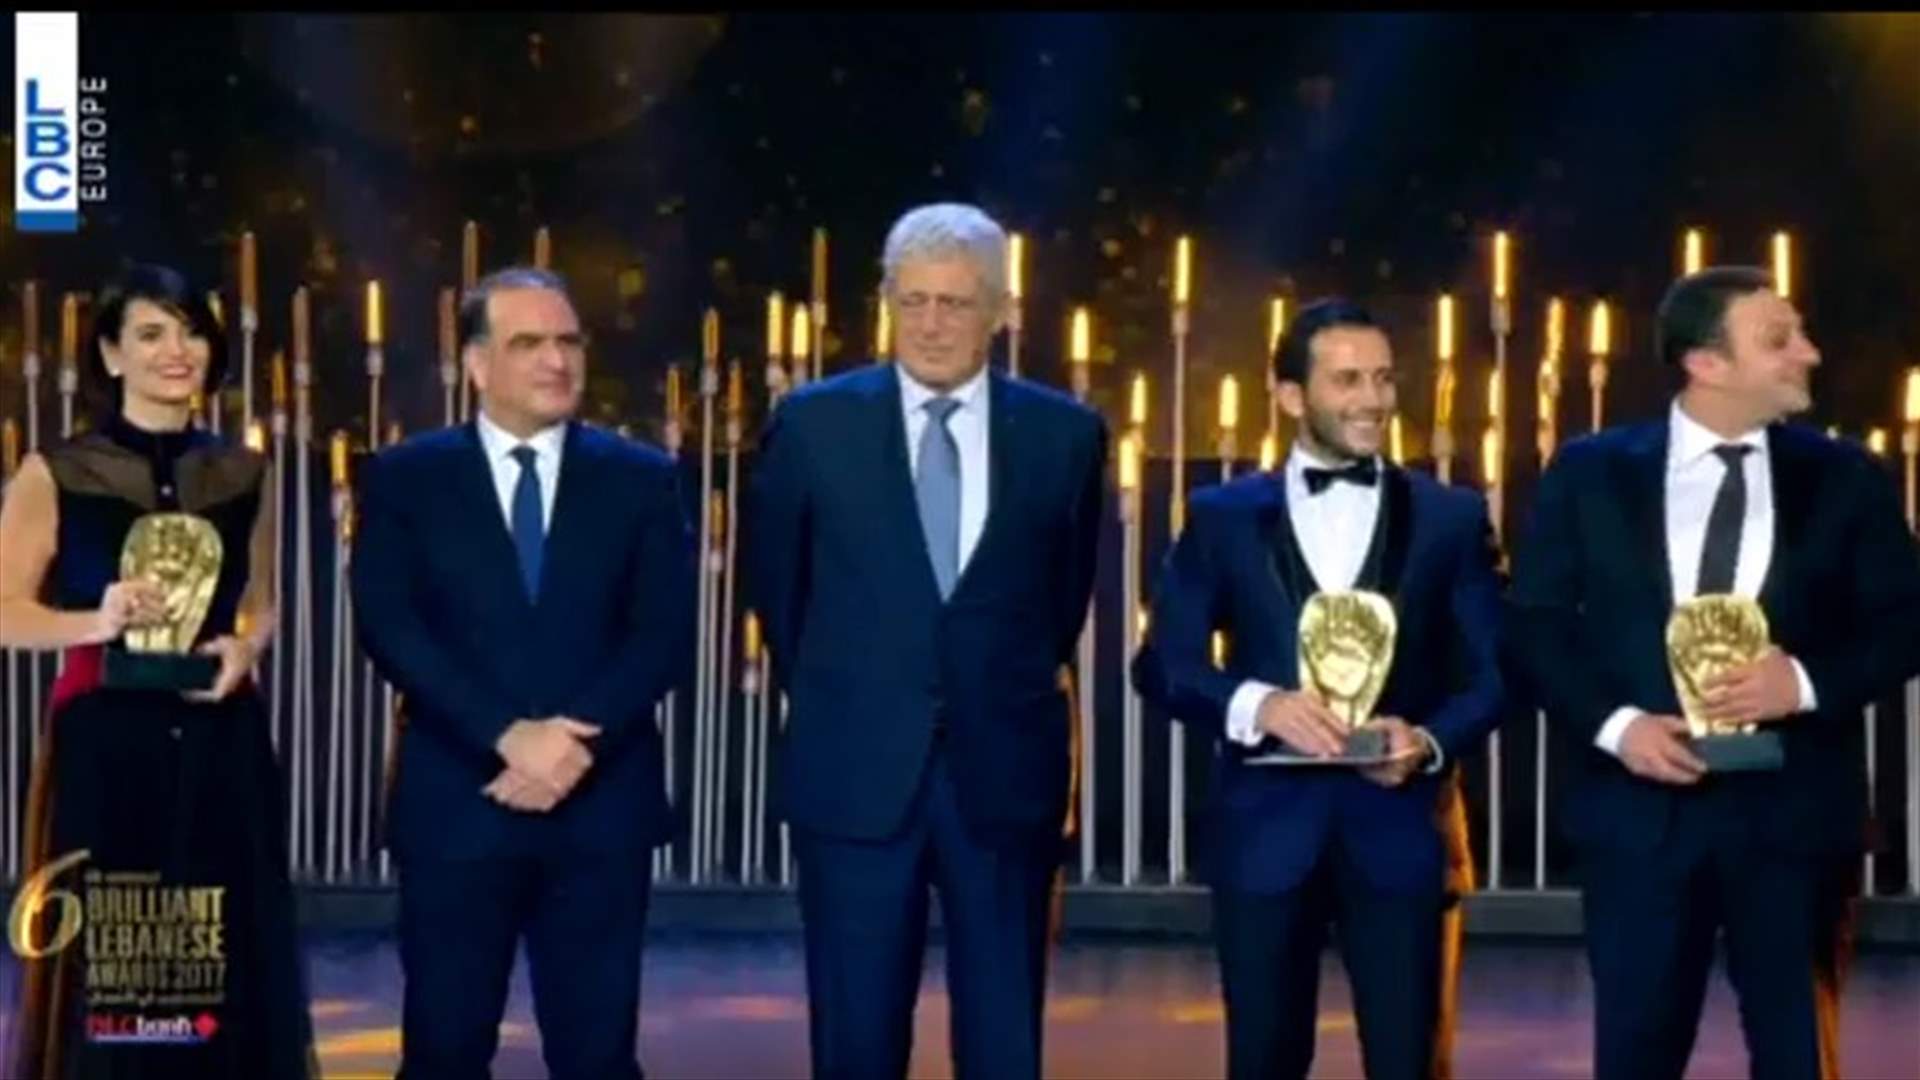 حفل توزيع جوائز  Brilliant Lebanese Awards...ليلة مليئة بالقصص الناجحة